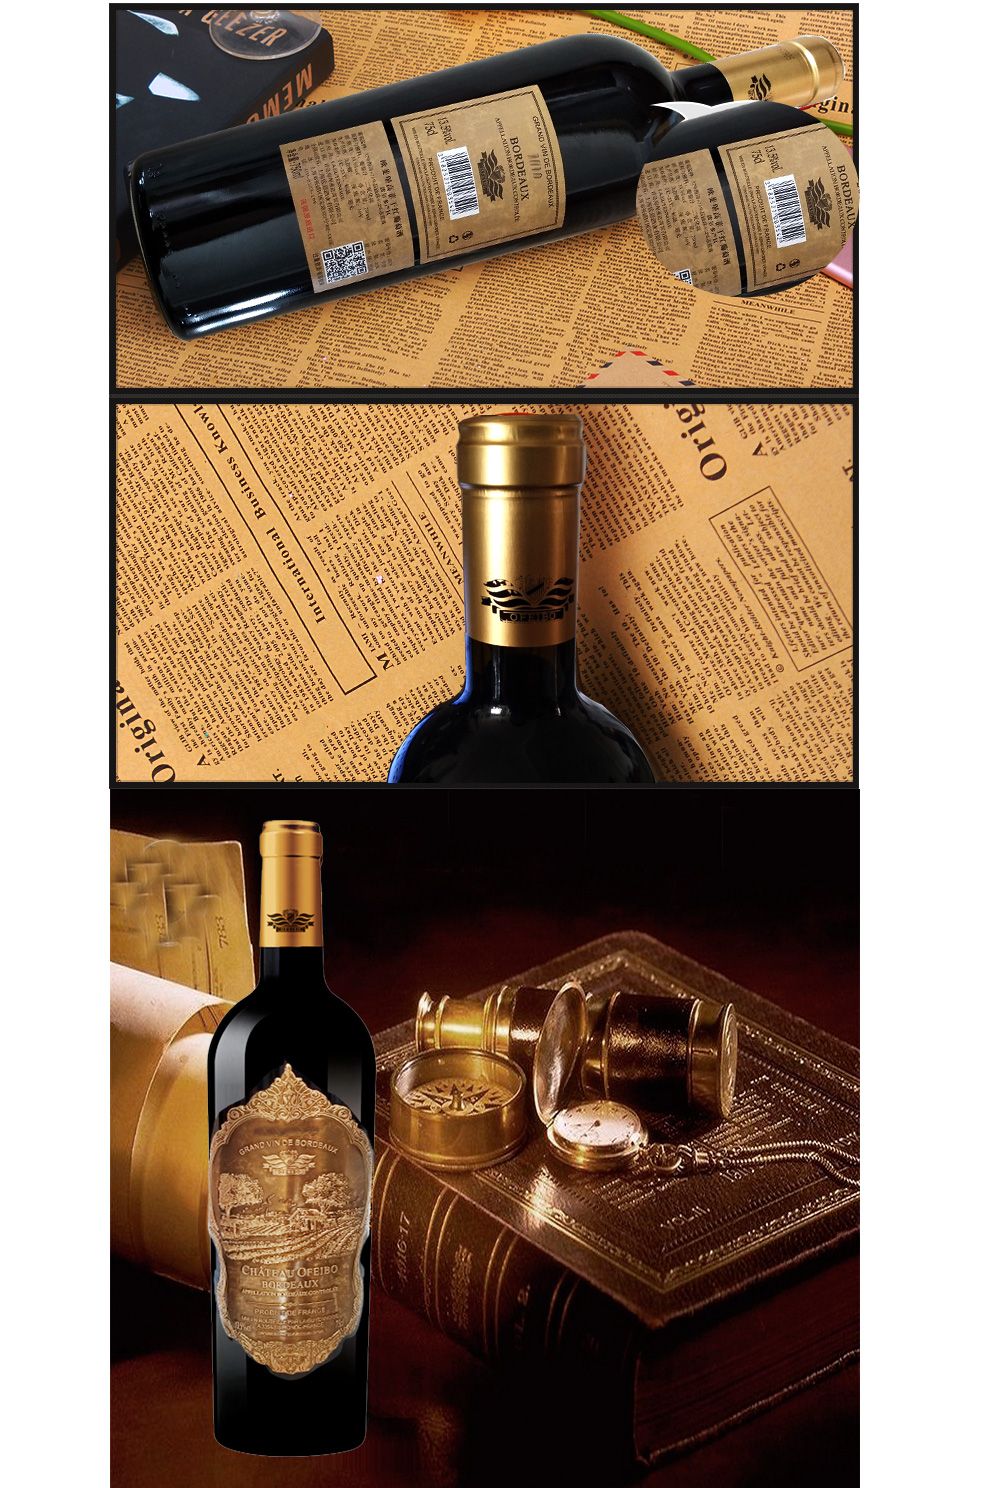 法国波尔多aoc红酒原瓶进口欧斐堡高菲干红葡萄酒葡萄年份2016六支